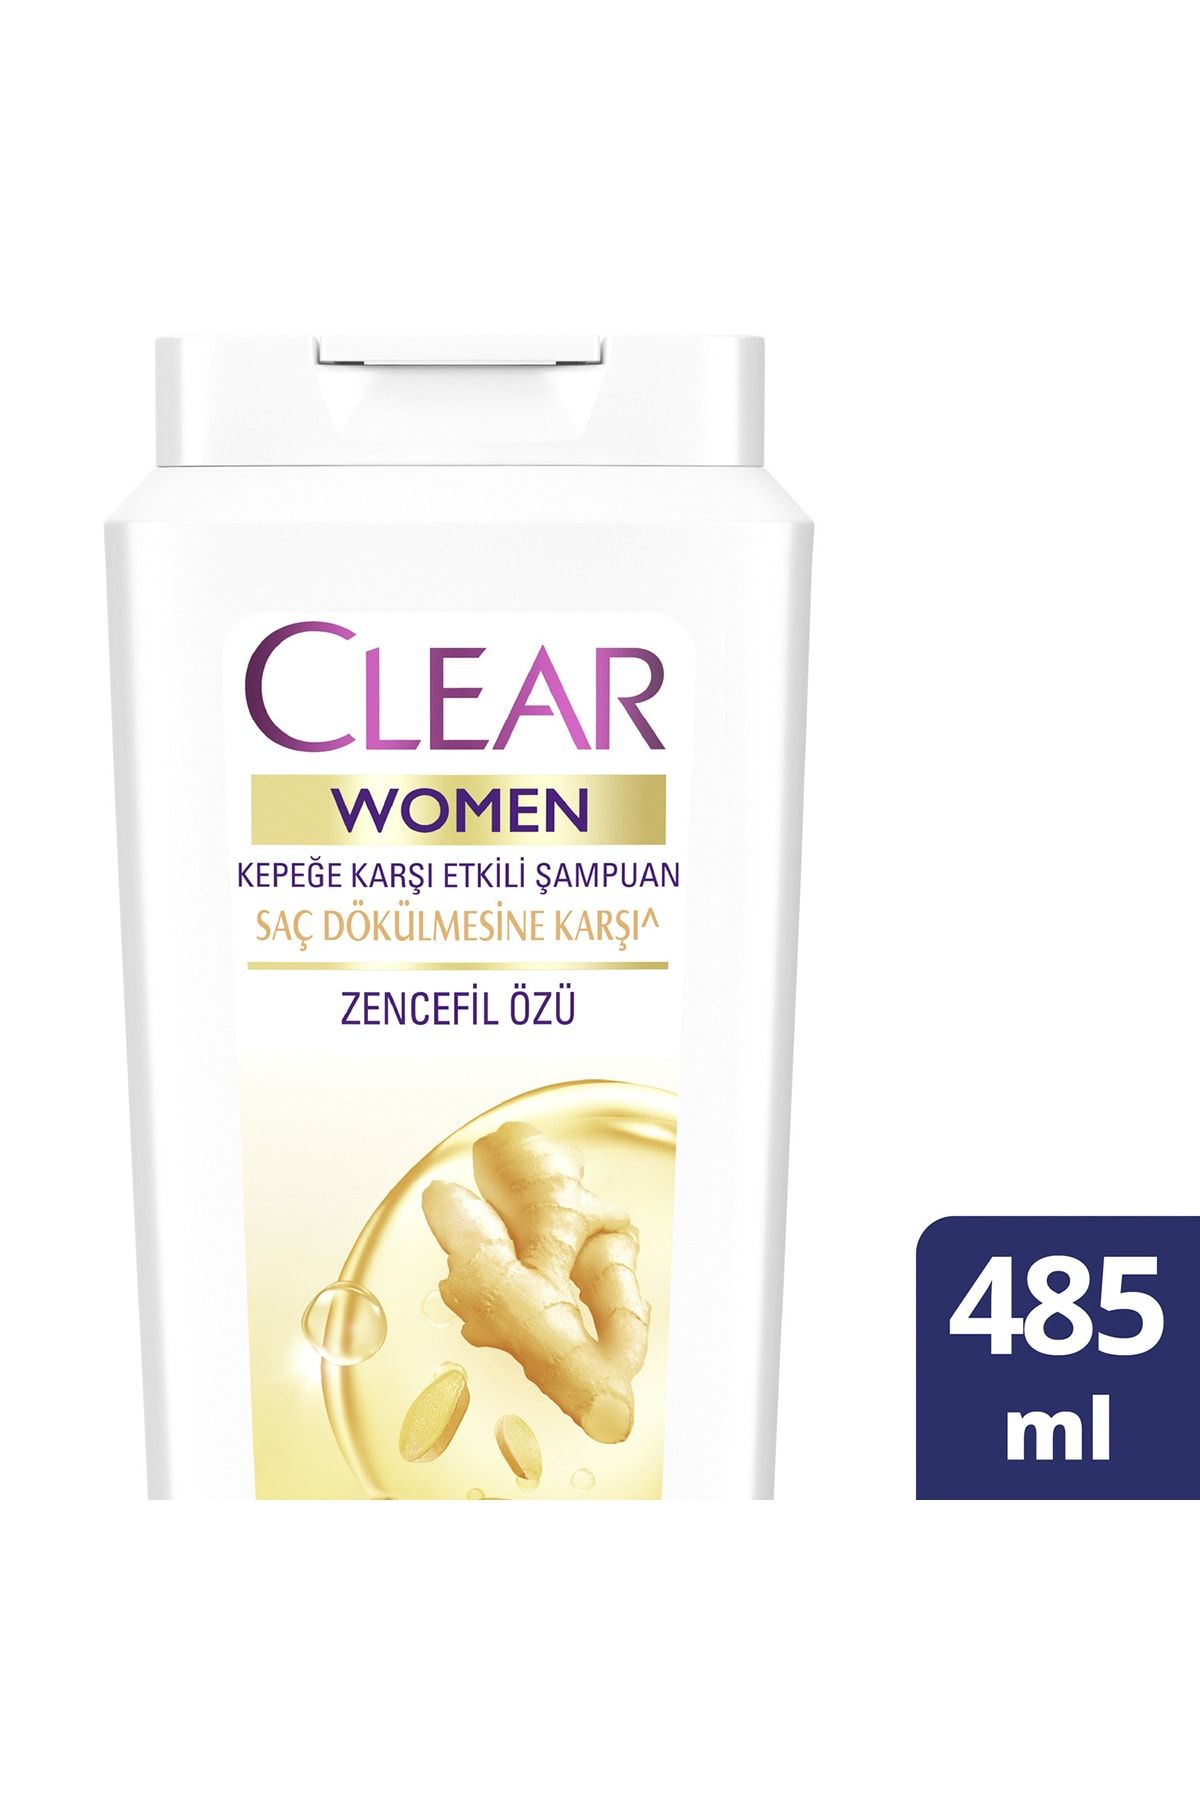 Clear Women Kepeğe Karşı Etkili Şampuan Saç Dökülmesine Karşı Zencefil Özü 485 ml